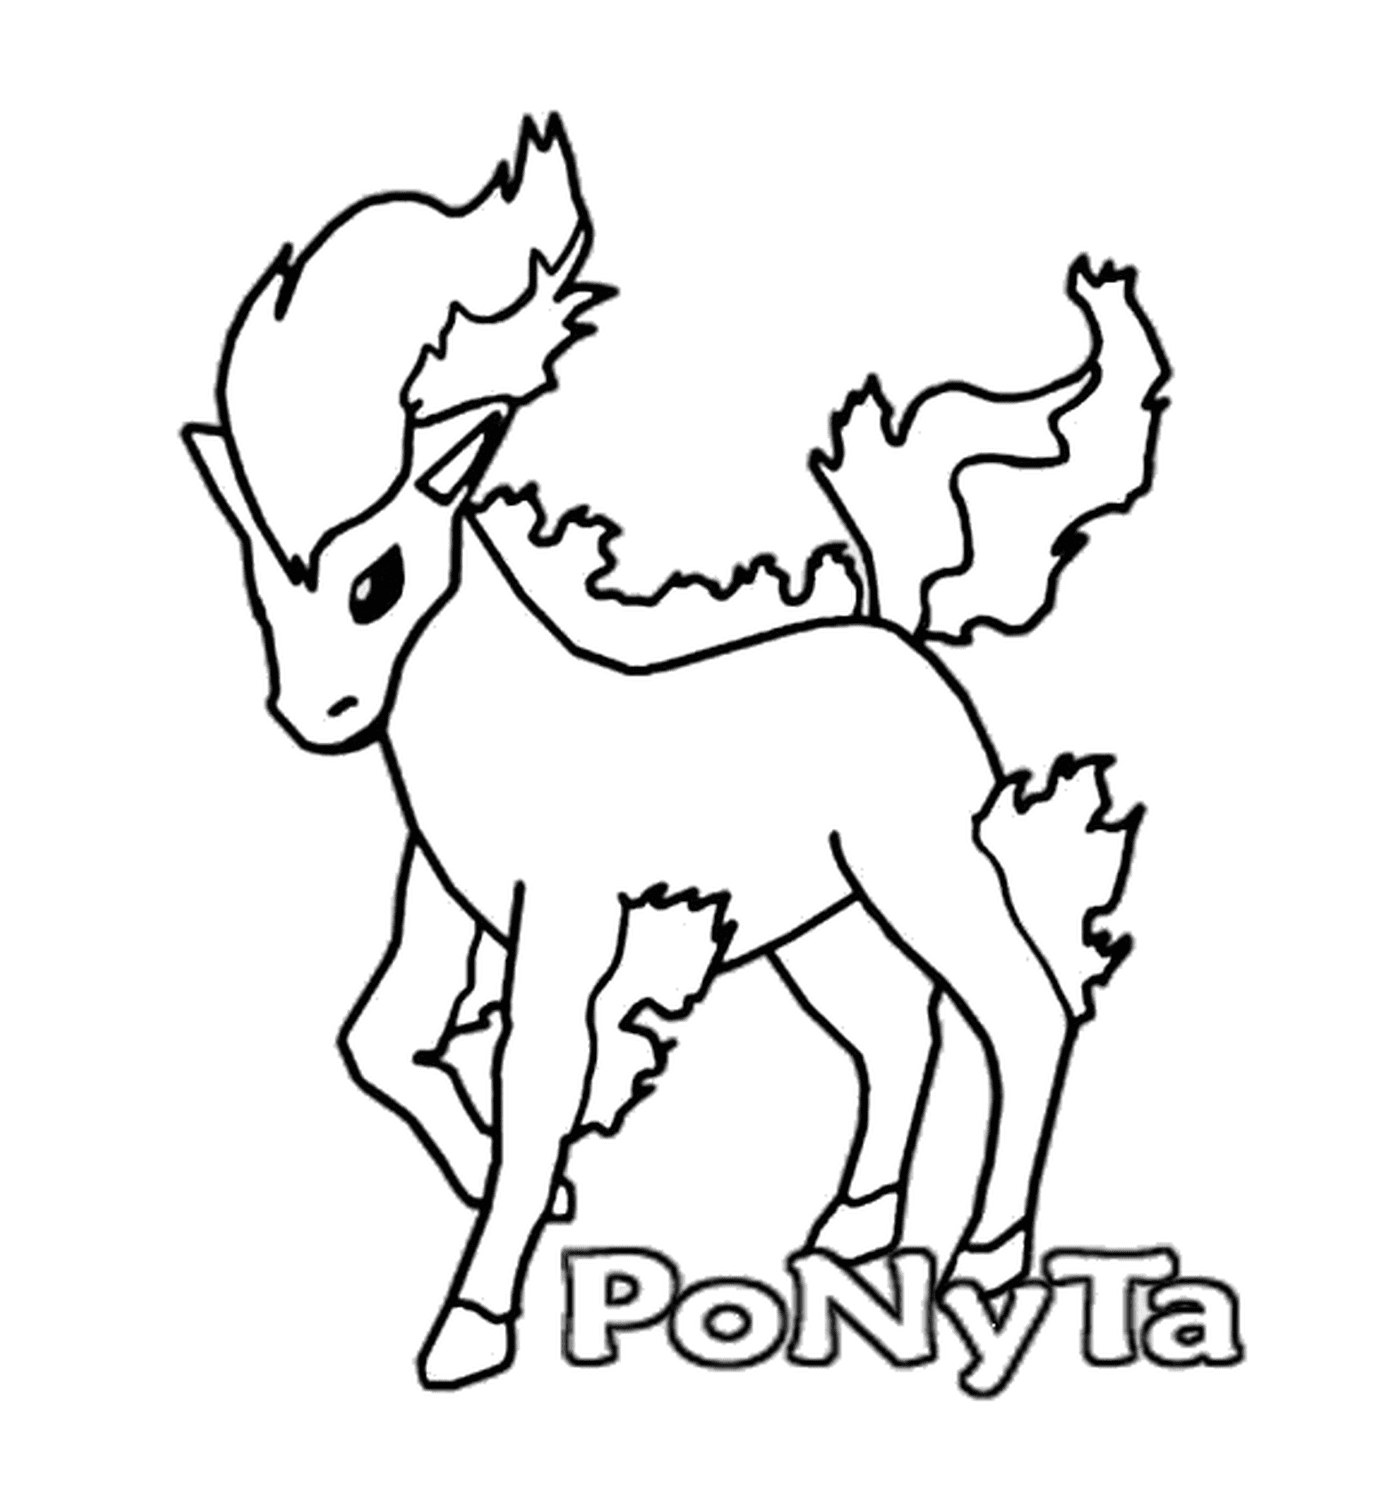   Ponyta : Cheval de feu élégant 